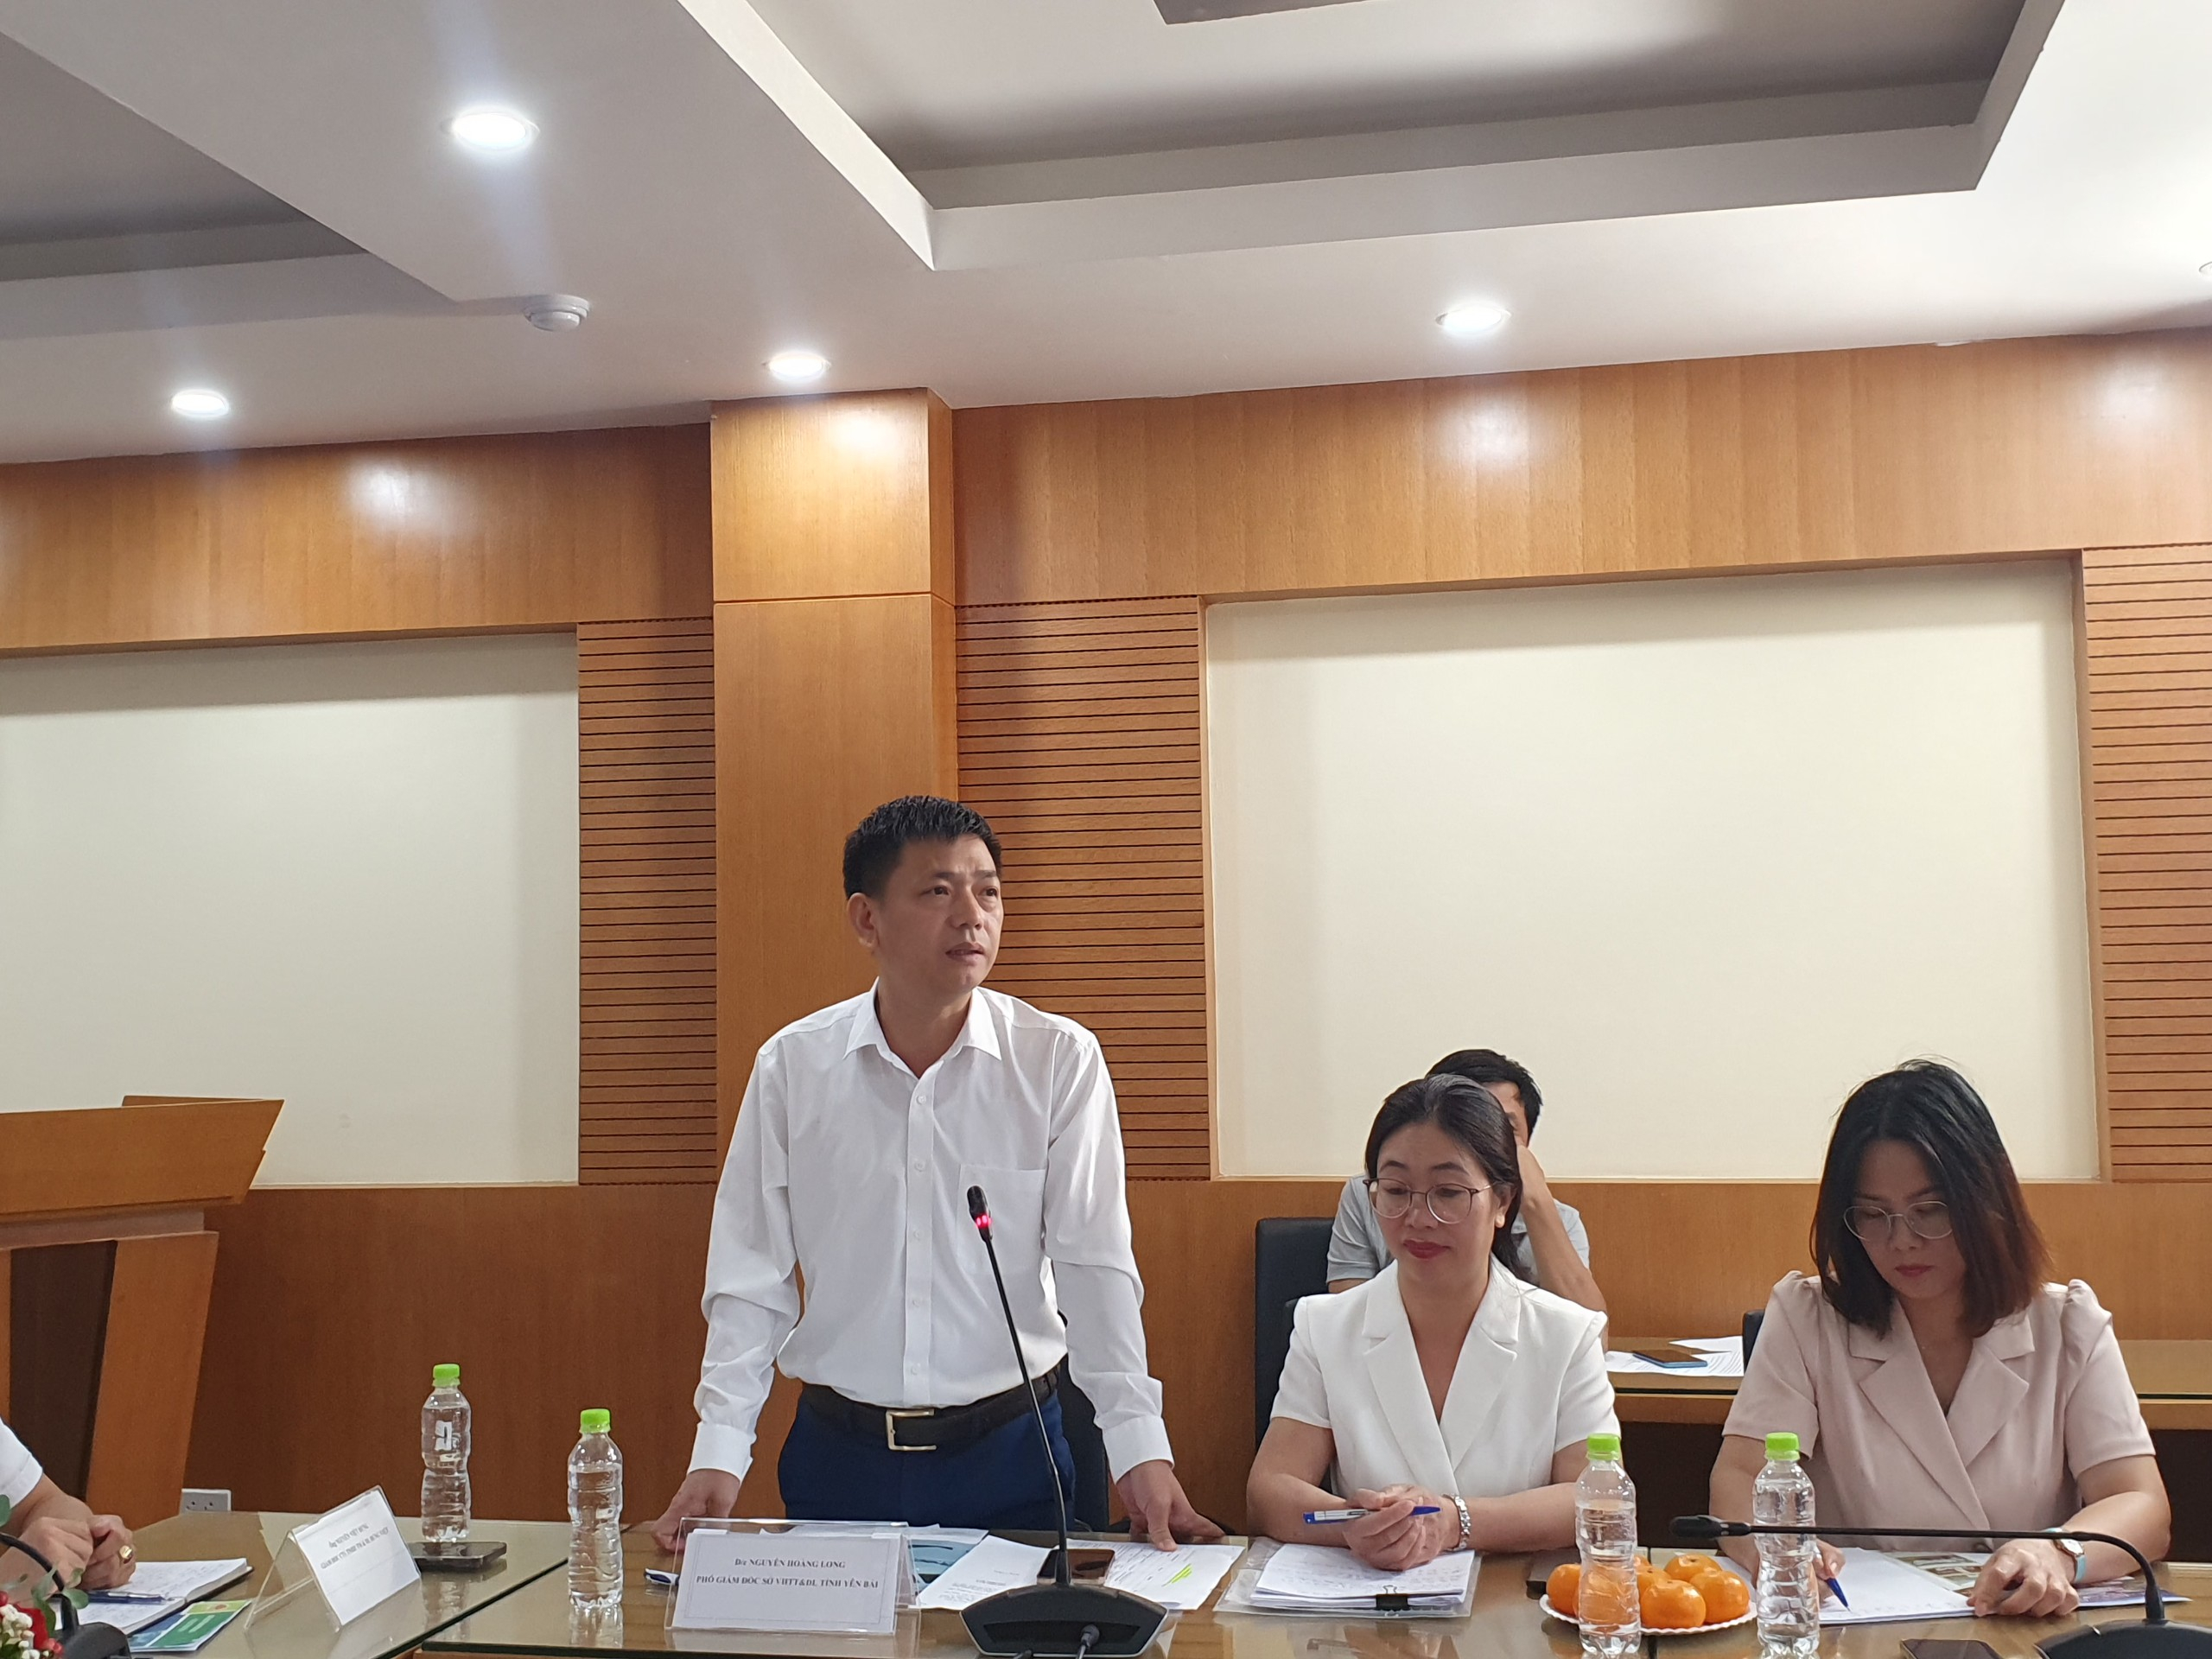 Đồng chí Nguyễn Hoàng Long, Phó giám đốc Sở VHTT&DL tỉnh Yên Bái phát biểu tại buổi gặp mặt các cơ quan báo chí.